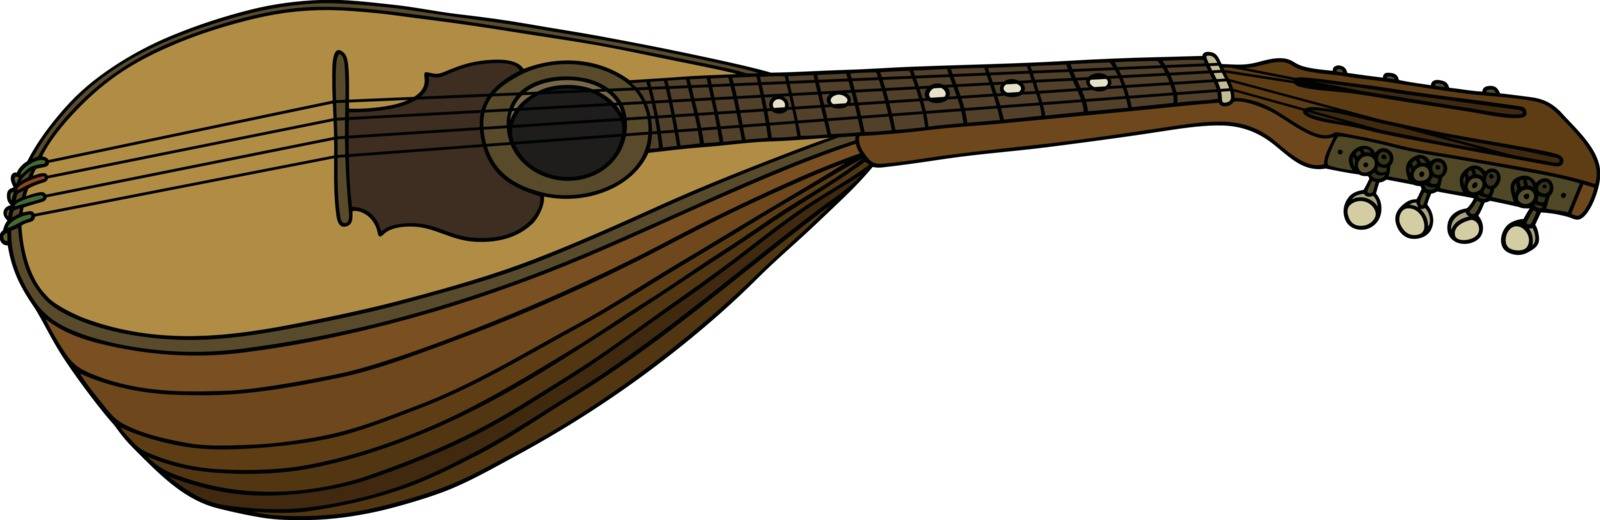 Classic portugal mandolin by vostal